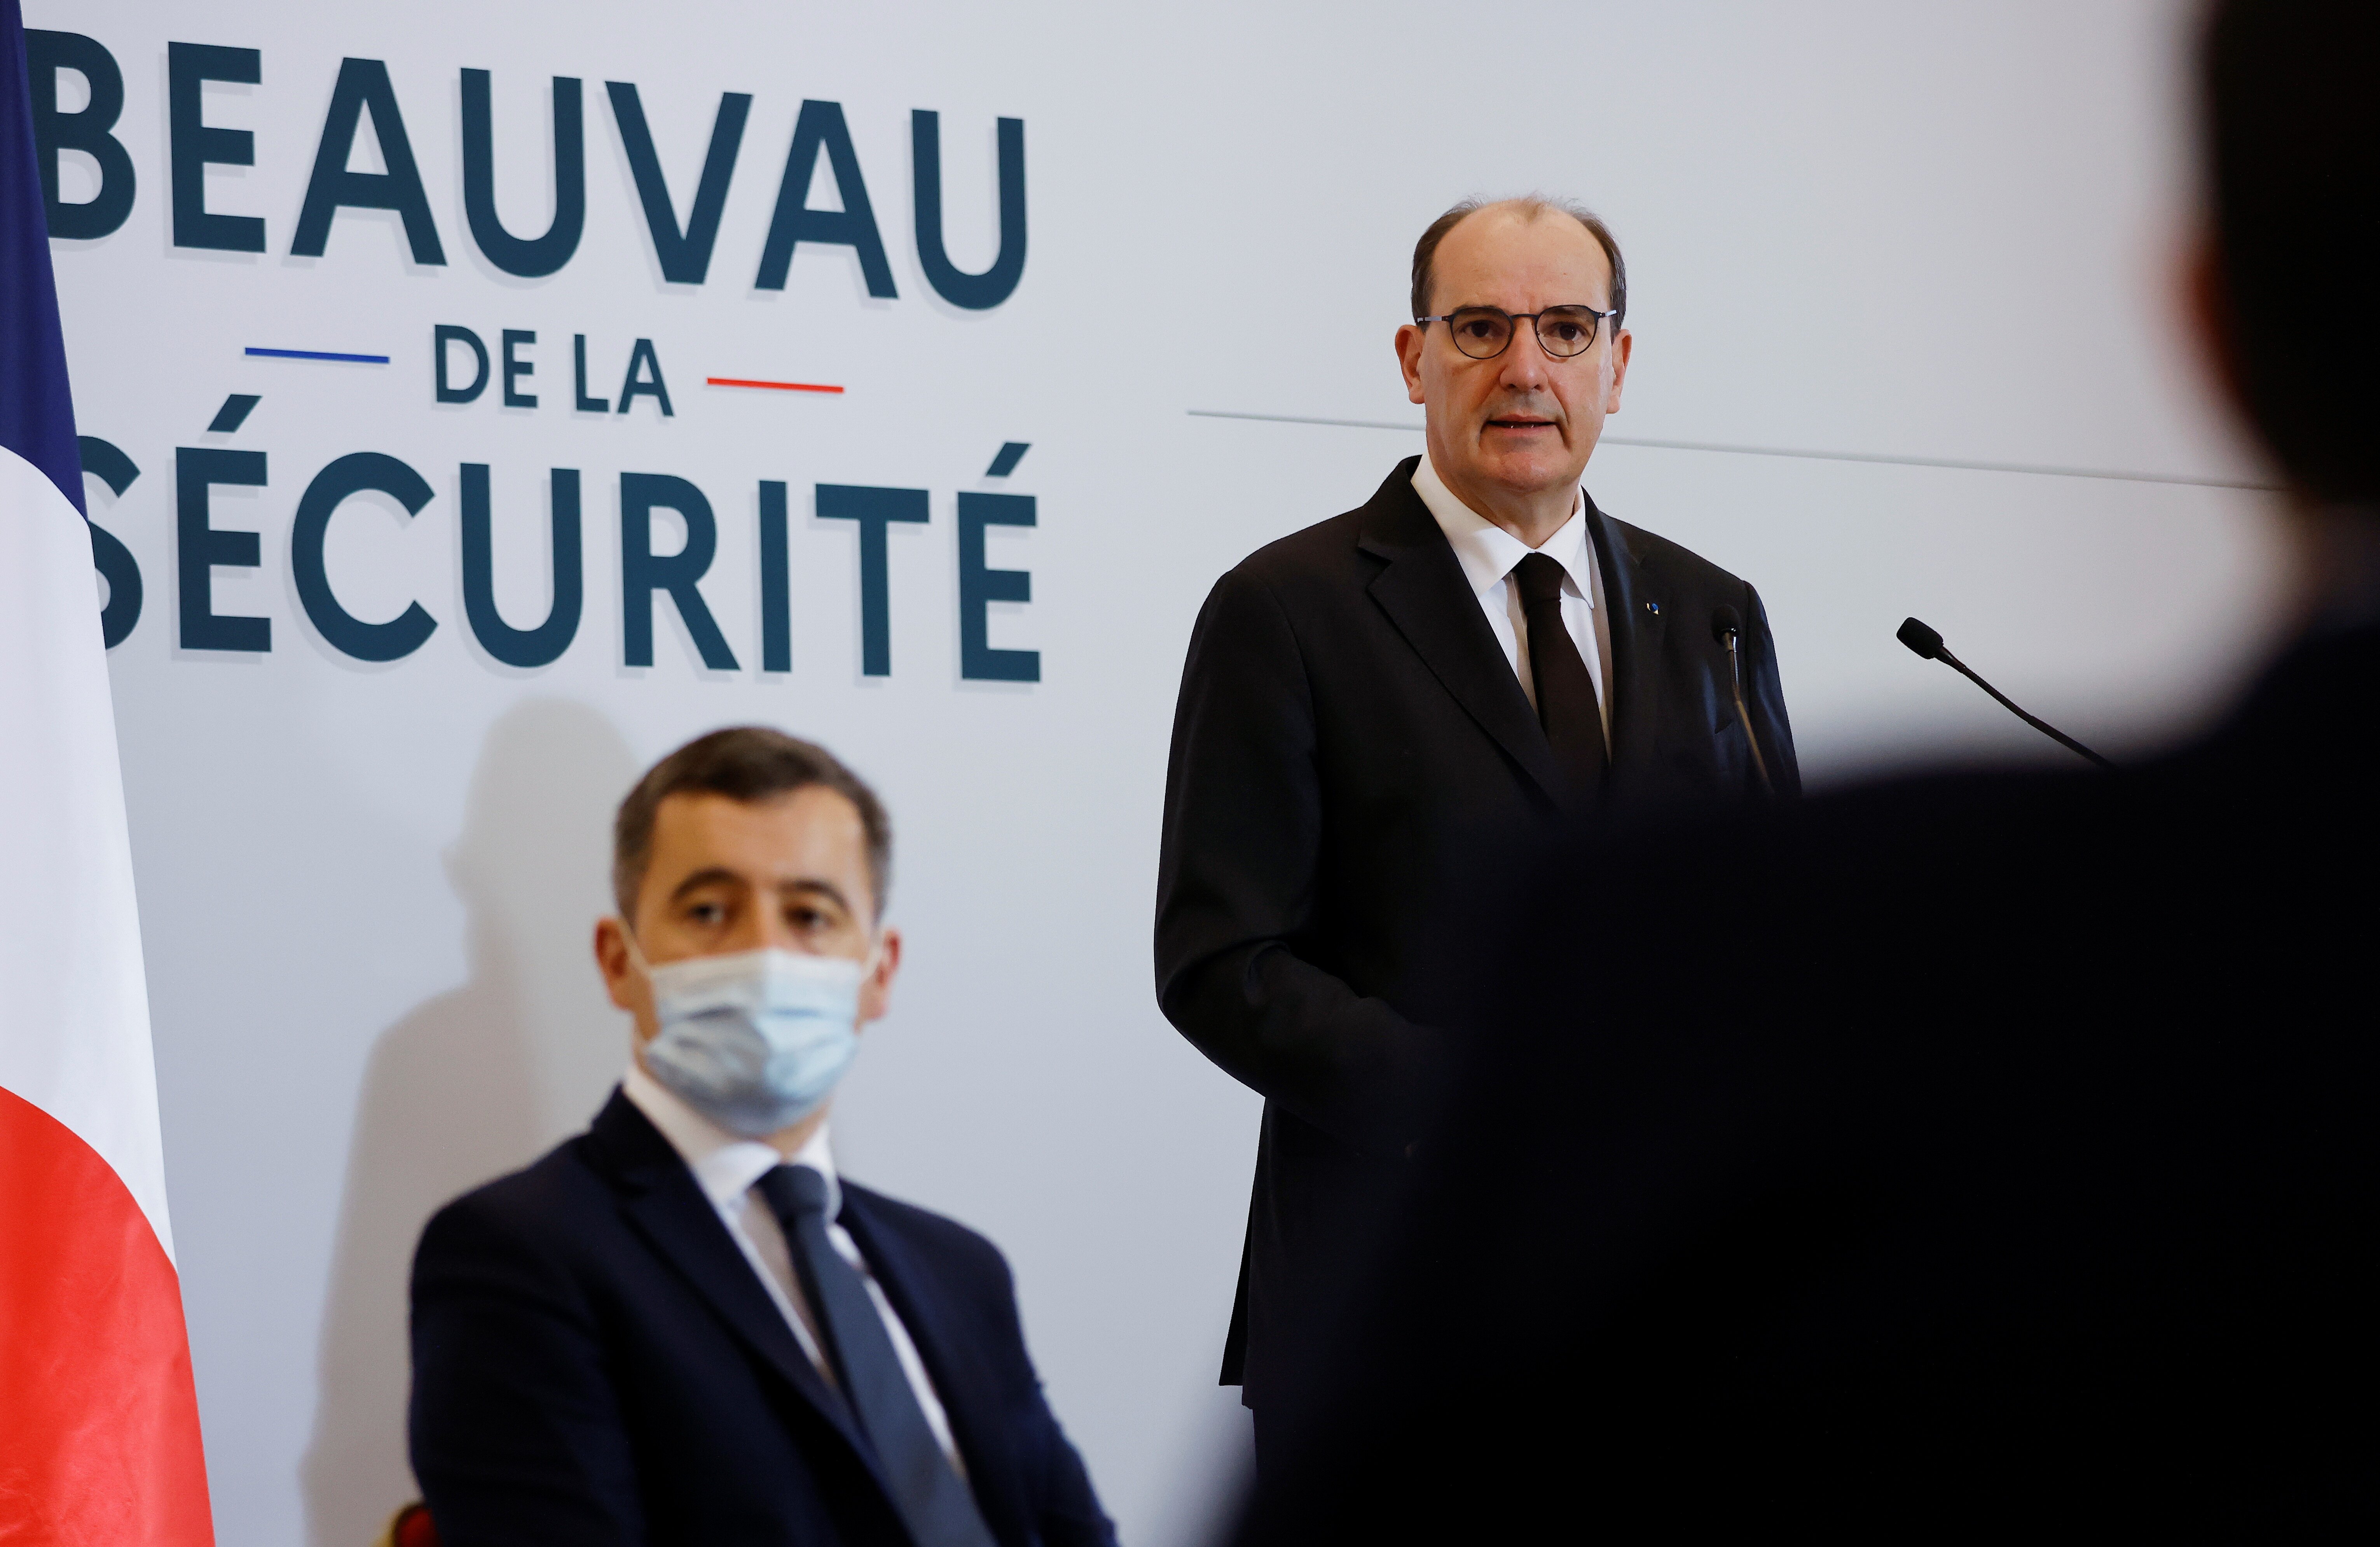 Beauvau de la Sécurité: Castex tente encore de corriger le tir après les déclarations de Macron à Brut